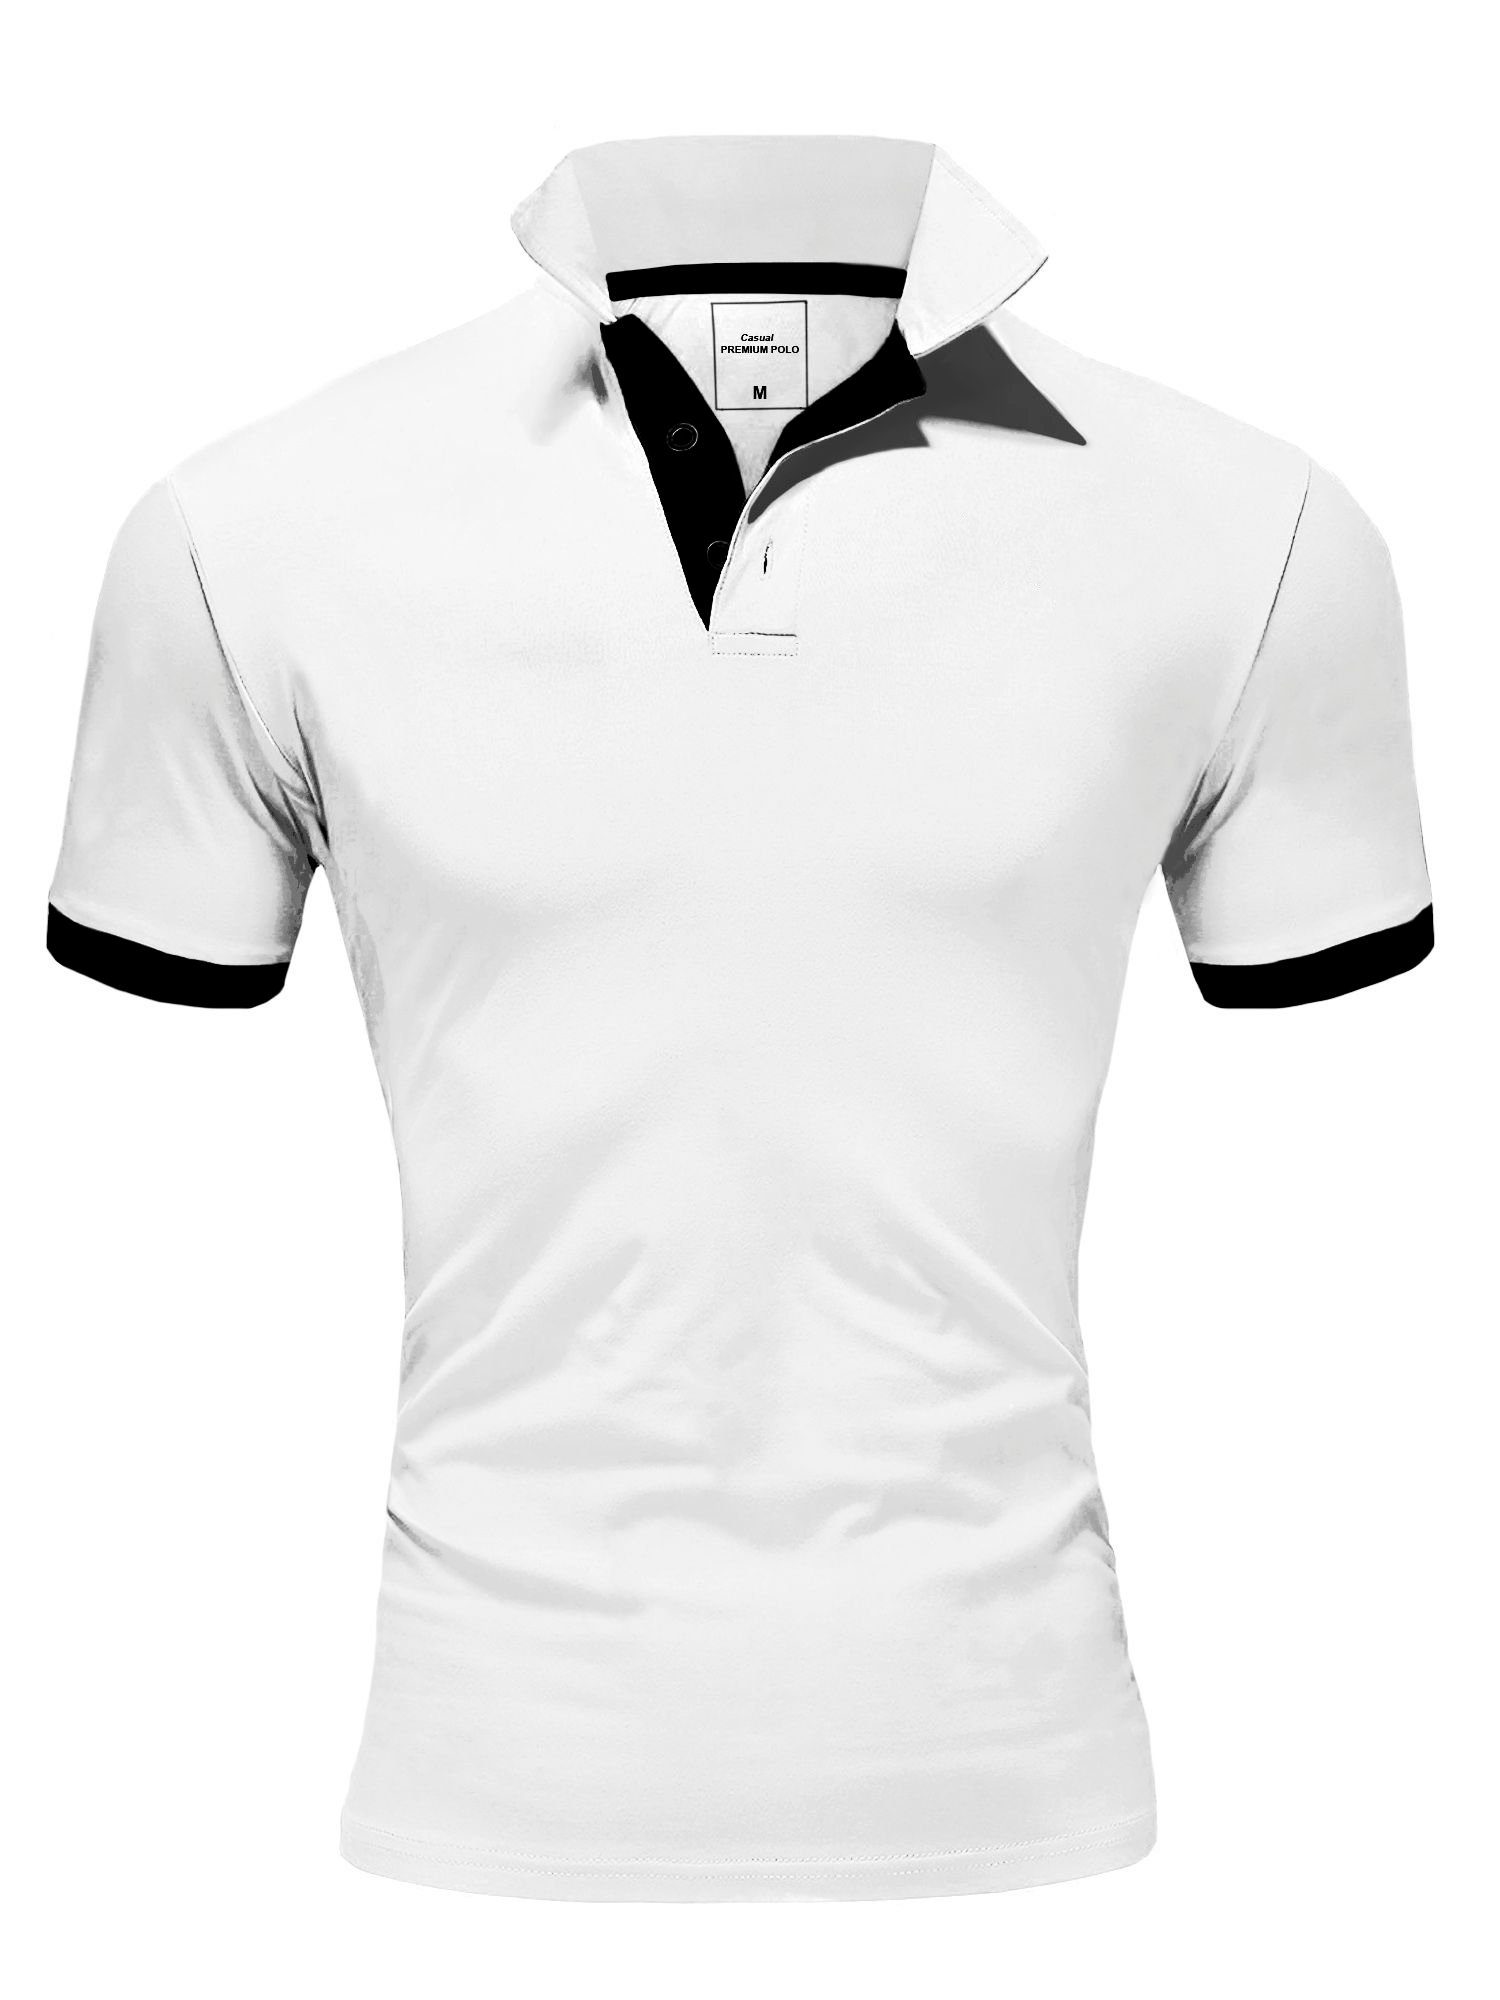 behype Poloshirt BASE mit kontrastfarbigen Details weiß-schwarz